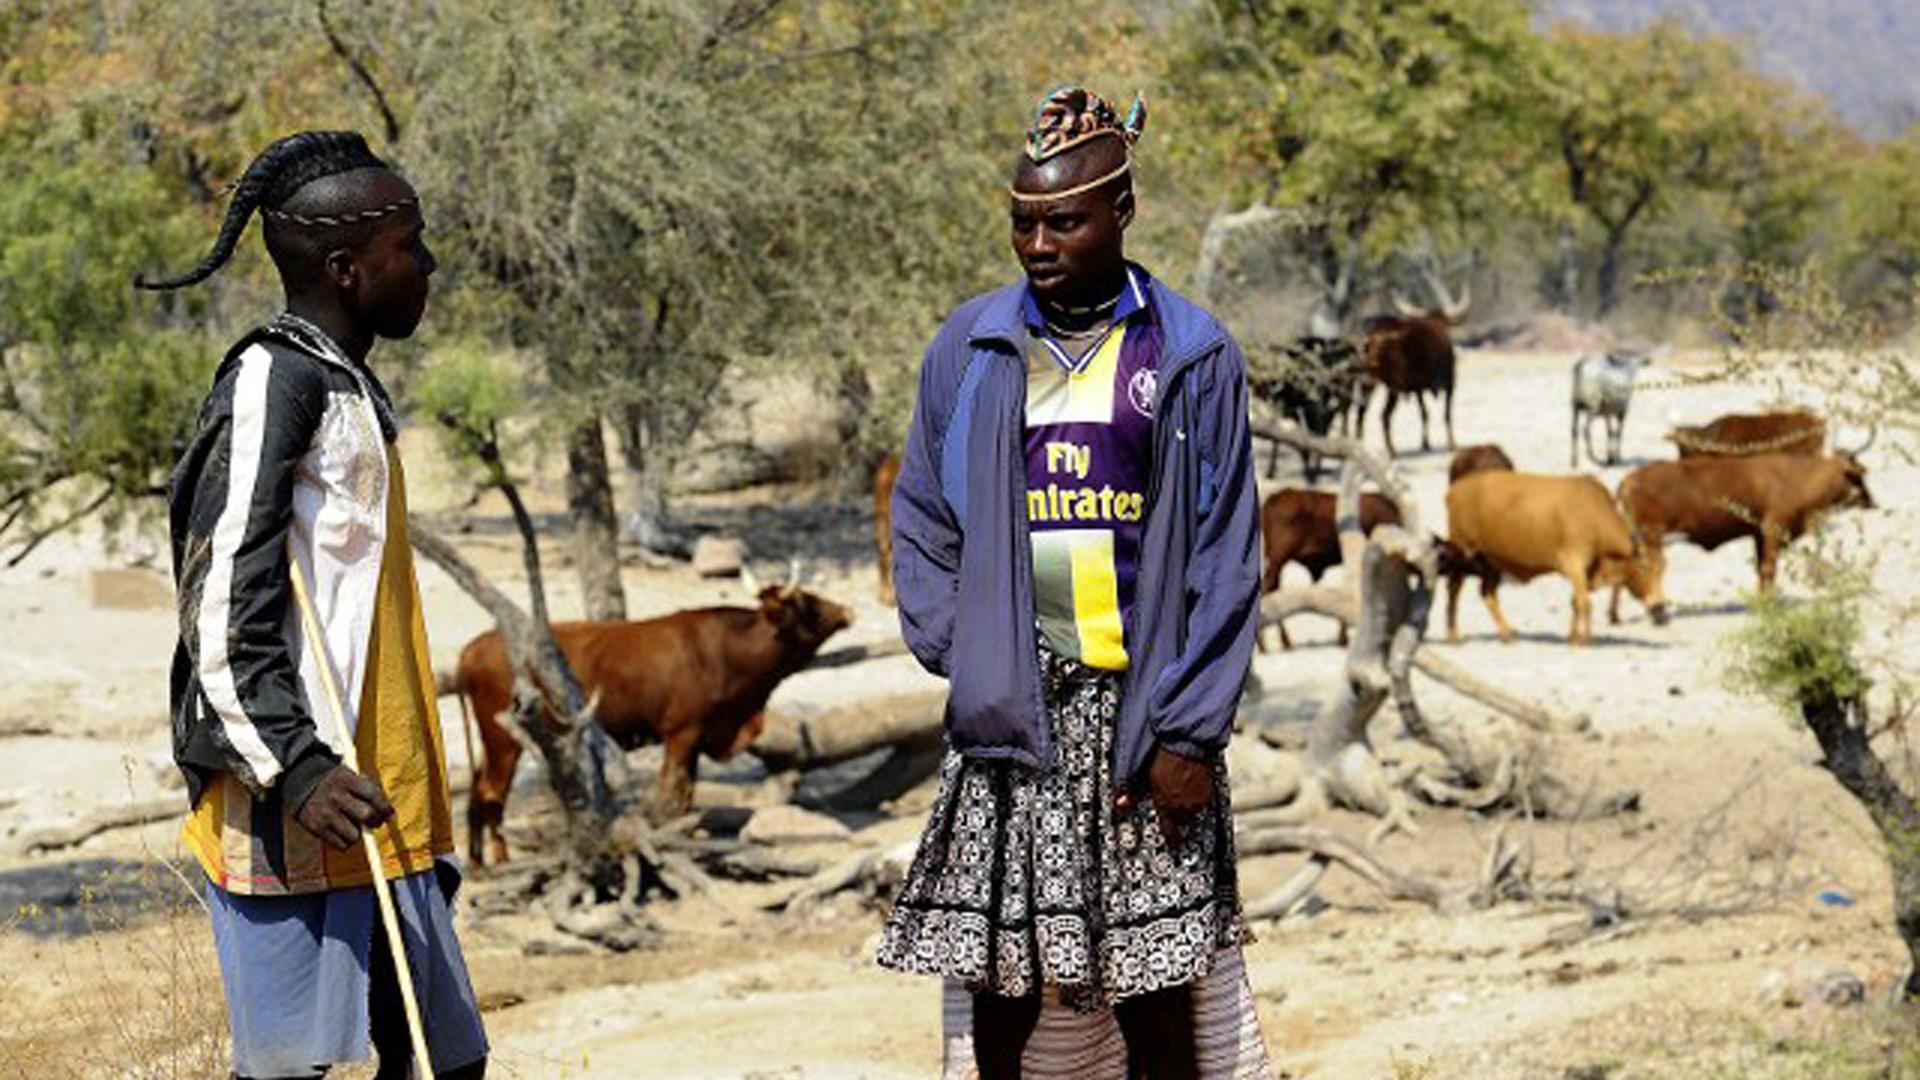 Zwei Himba-Männer in Namibia unterhalten sich, während sie auf ihre Kühe aufpassen.